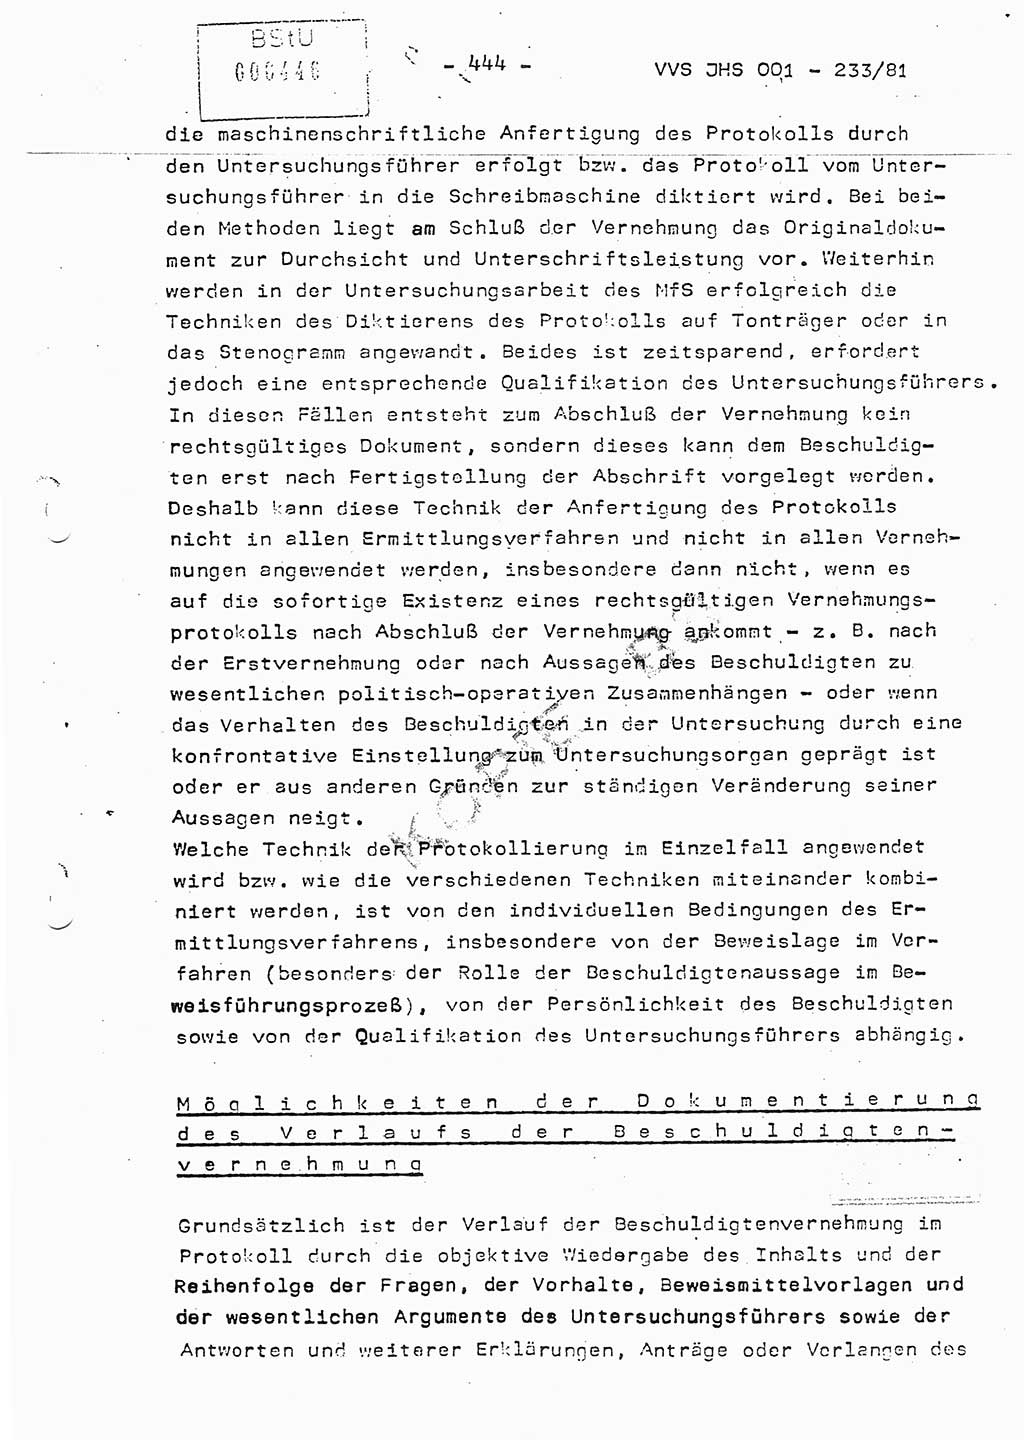 Dissertation Oberstleutnant Horst Zank (JHS), Oberstleutnant Dr. Karl-Heinz Knoblauch (JHS), Oberstleutnant Gustav-Adolf Kowalewski (HA Ⅸ), Oberstleutnant Wolfgang Plötner (HA Ⅸ), Ministerium für Staatssicherheit (MfS) [Deutsche Demokratische Republik (DDR)], Juristische Hochschule (JHS), Vertrauliche Verschlußsache (VVS) o001-233/81, Potsdam 1981, Blatt 444 (Diss. MfS DDR JHS VVS o001-233/81 1981, Bl. 444)